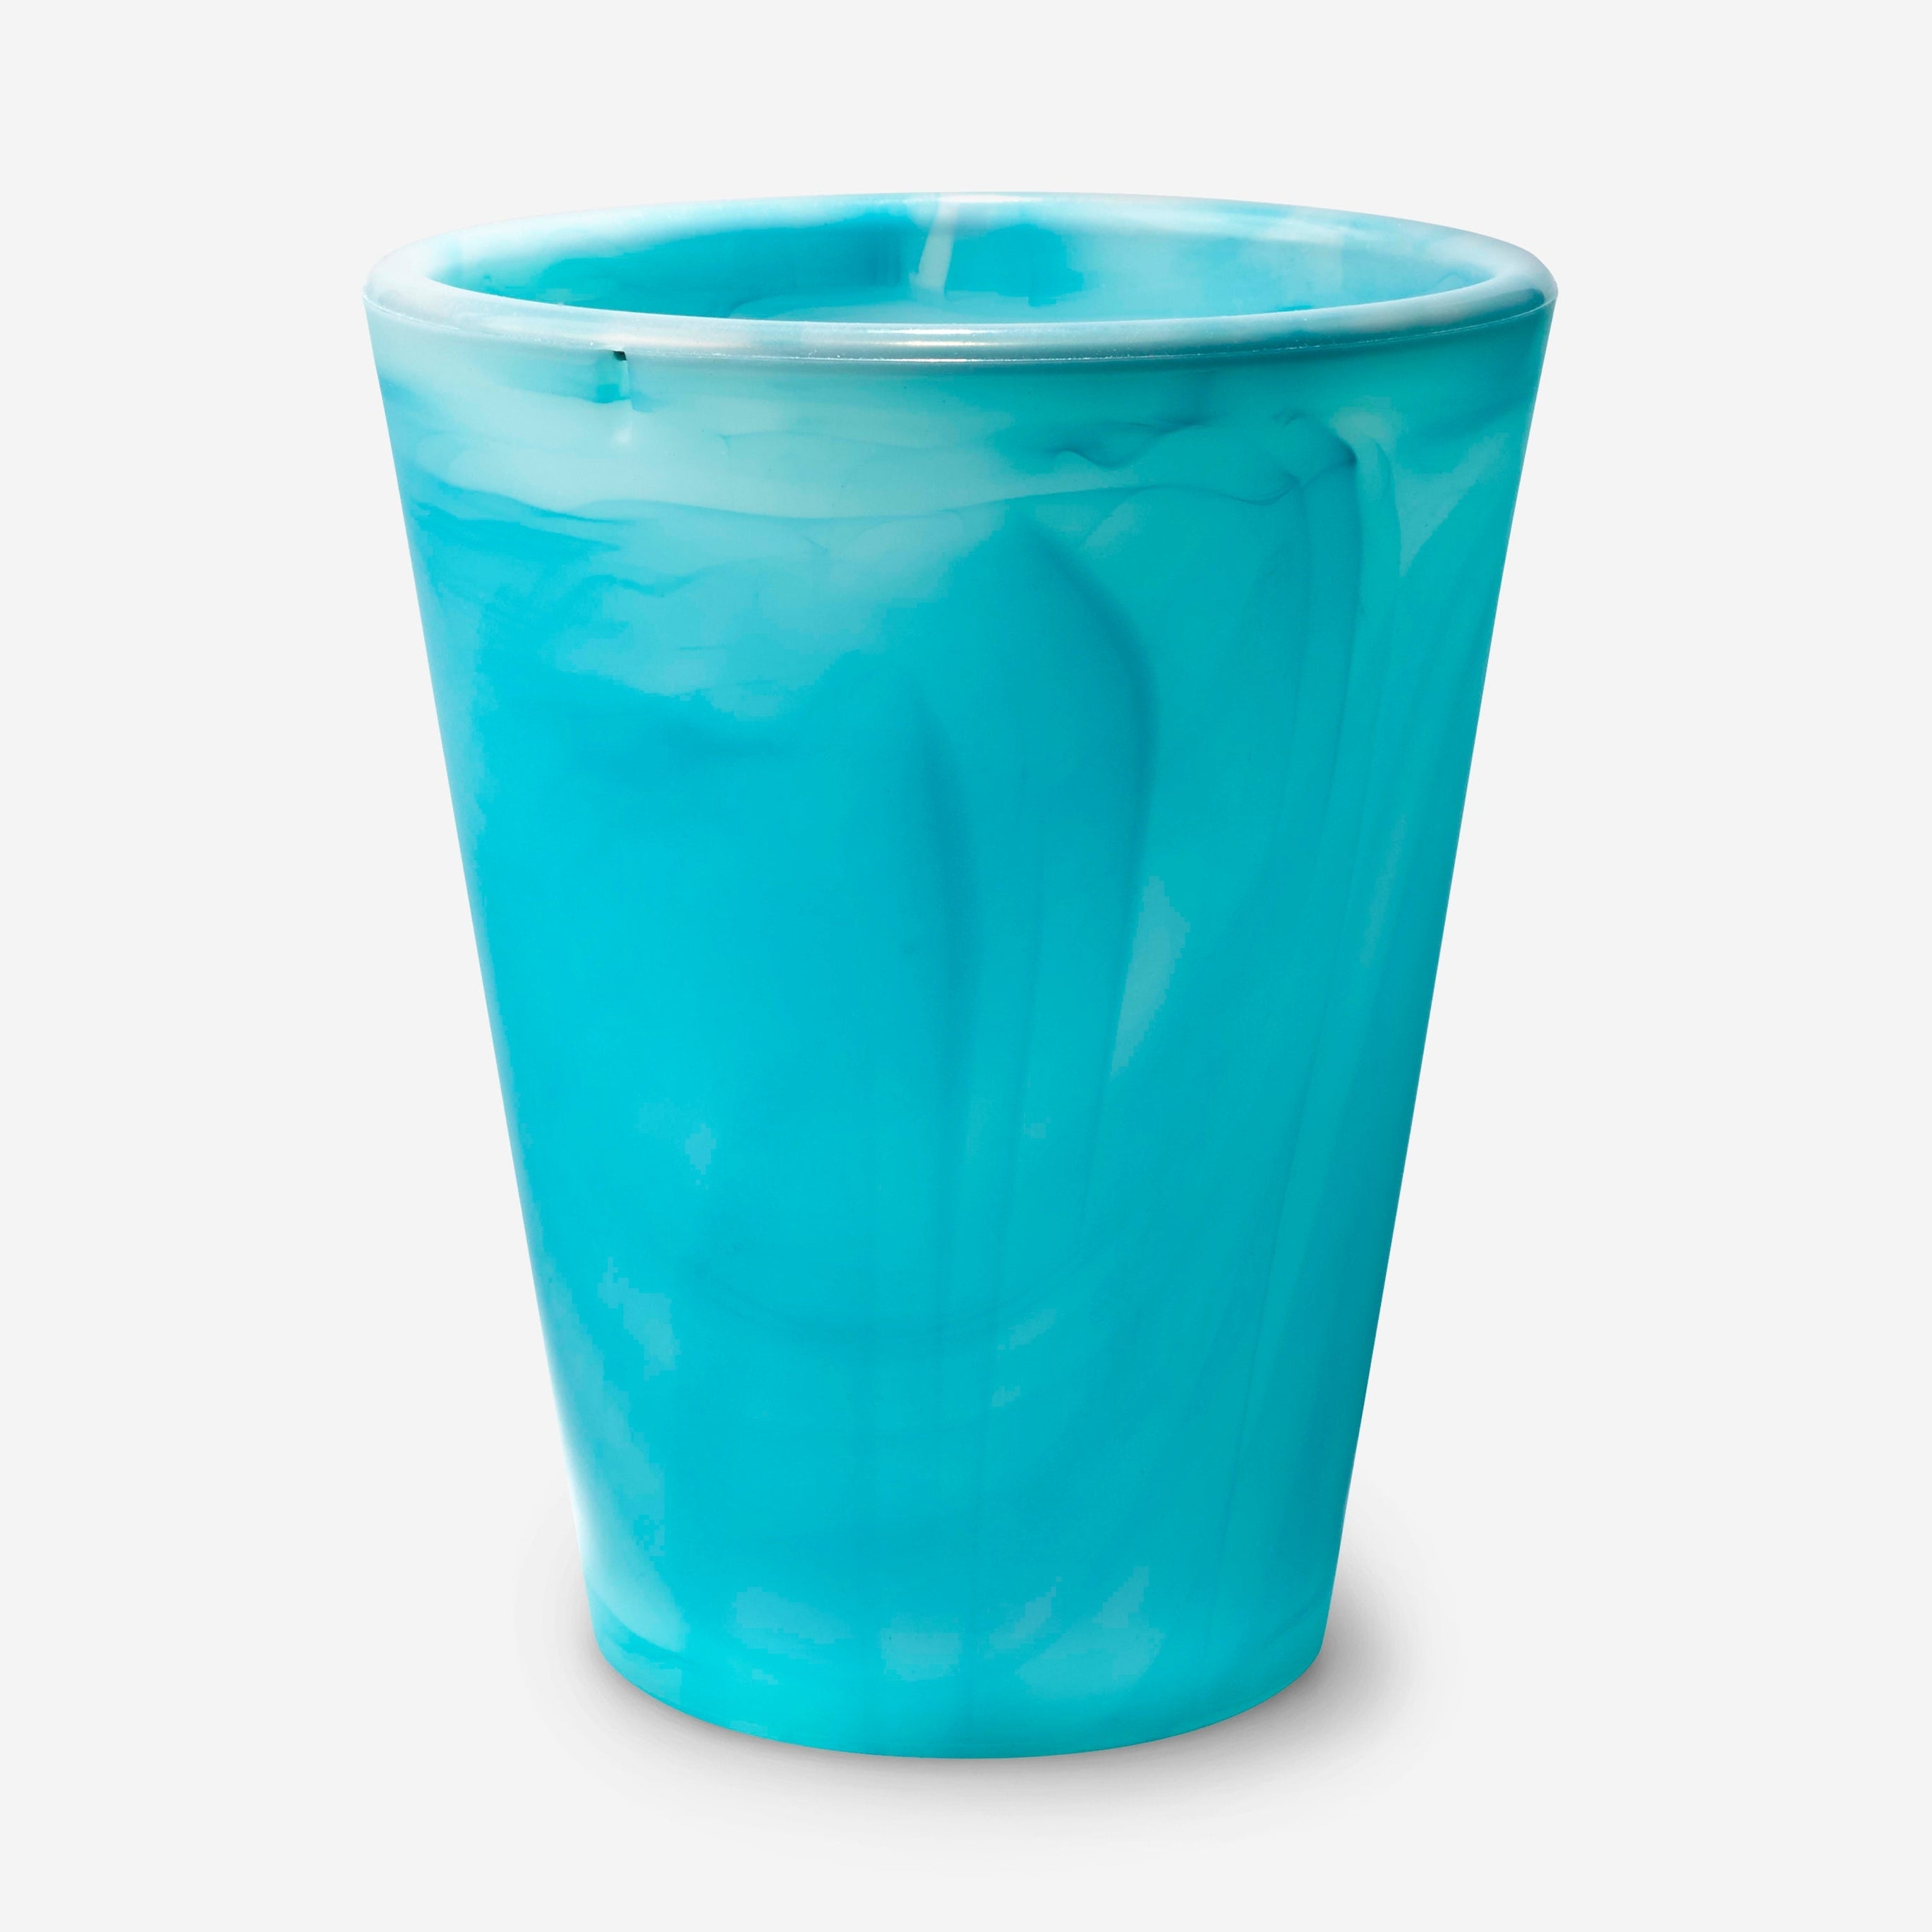 Gosili Silicone Water Cup - 20 oz